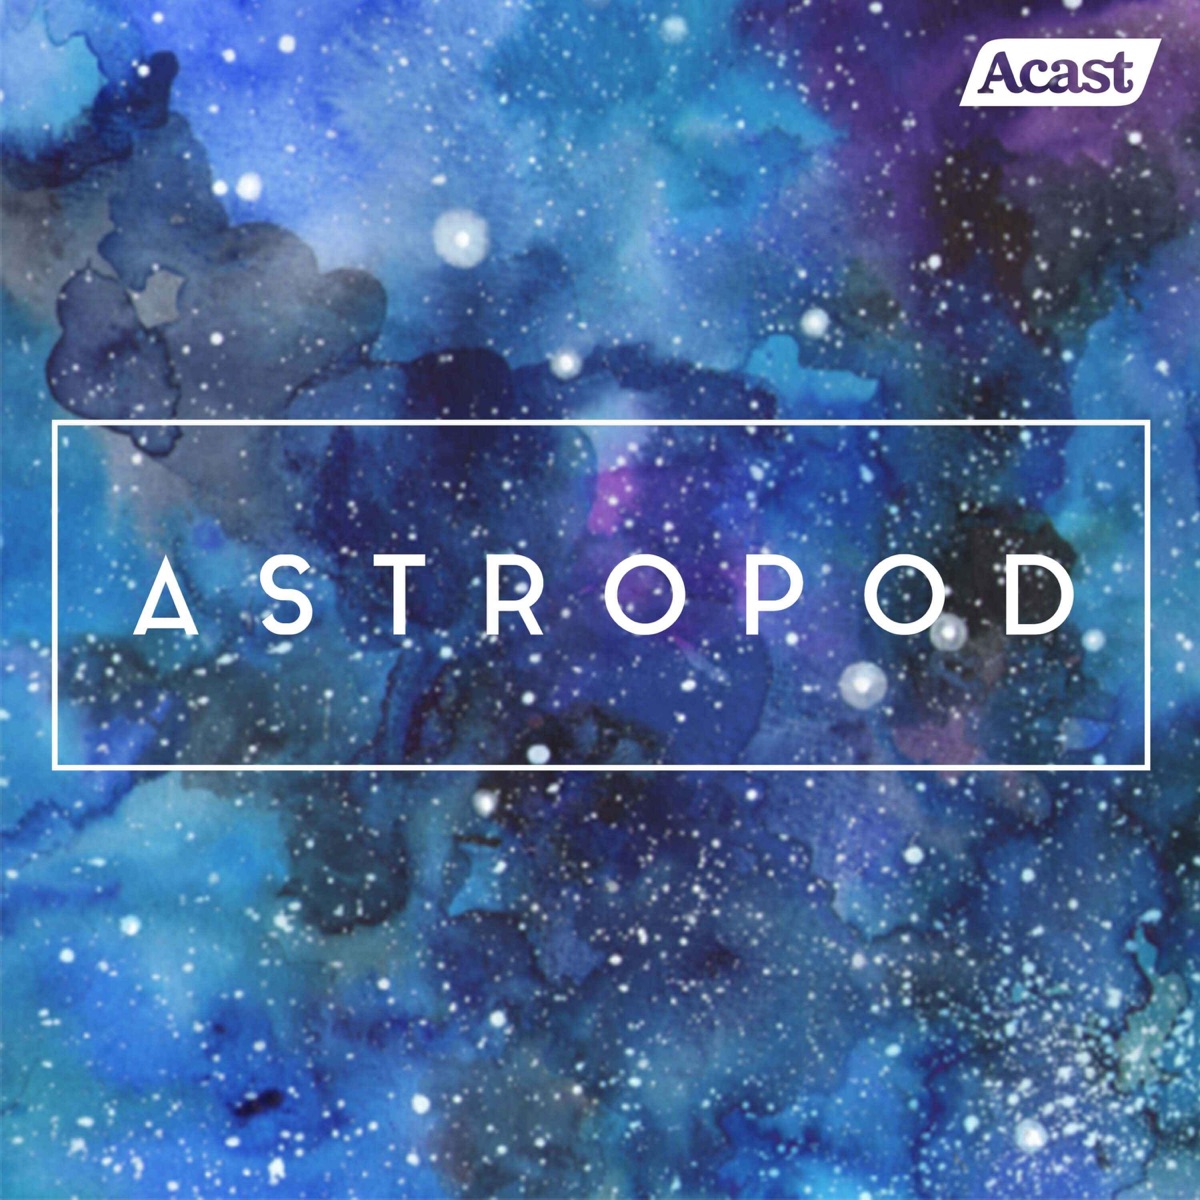 Astropod